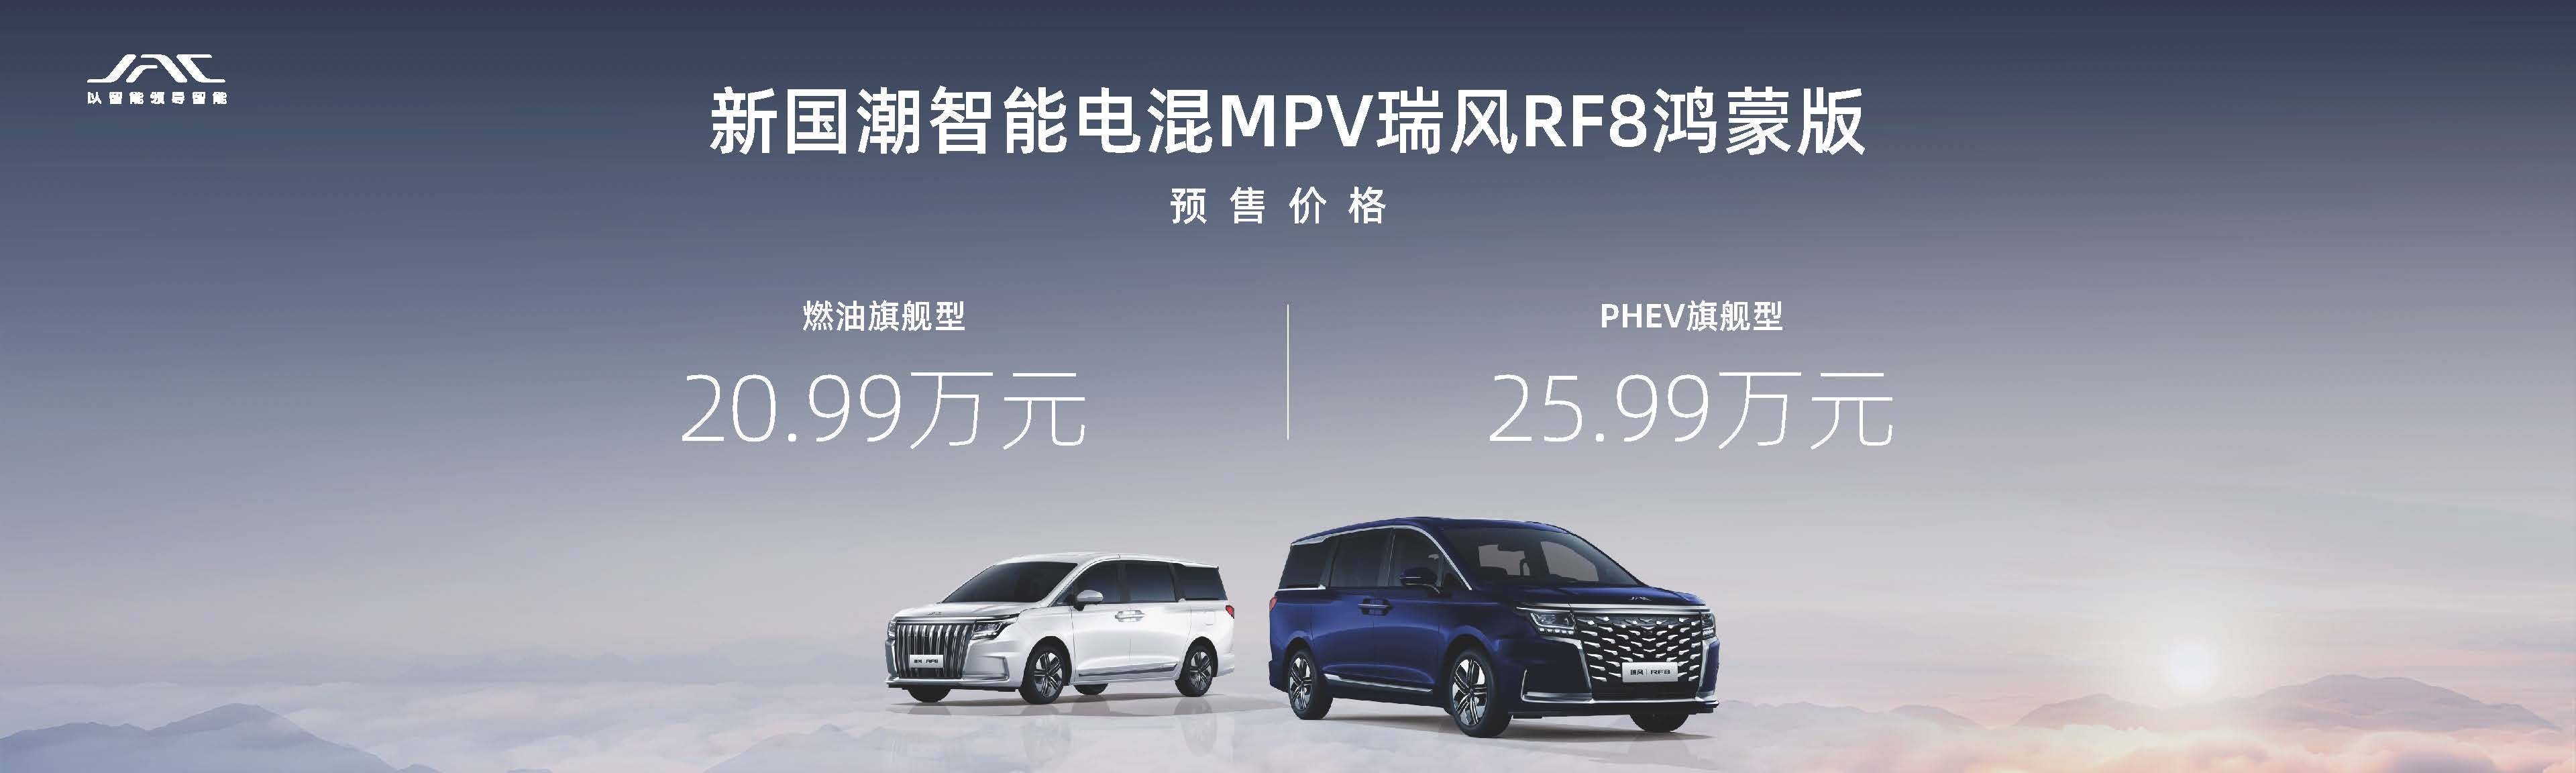 首款华为MPV瑞风RF8鸿蒙系统版将于北京车展_搜狐汽车_ Sohu.com上市。